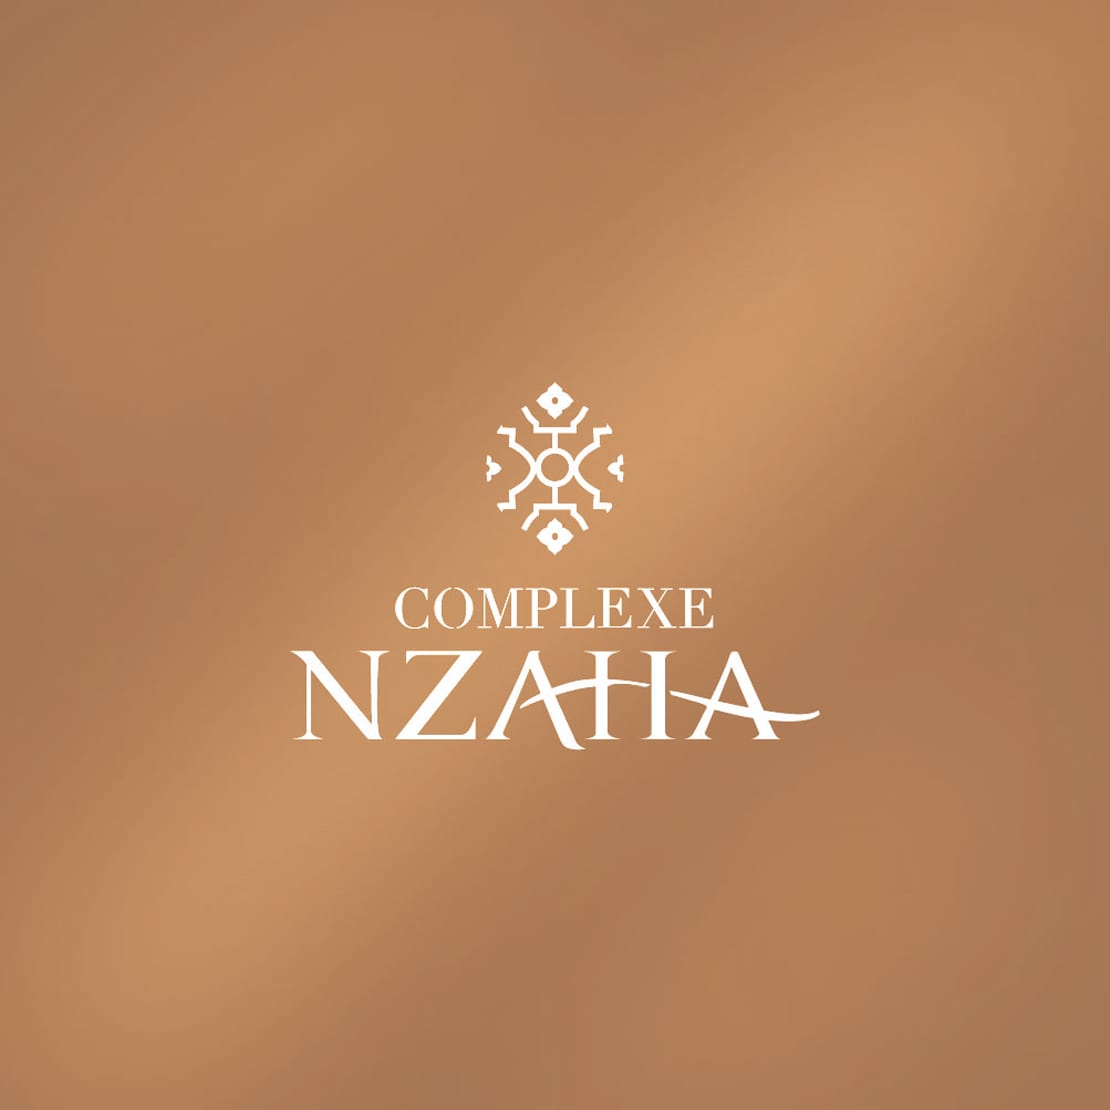 Complexe Nzaha, diseño elegante de logotipo en colores cobres